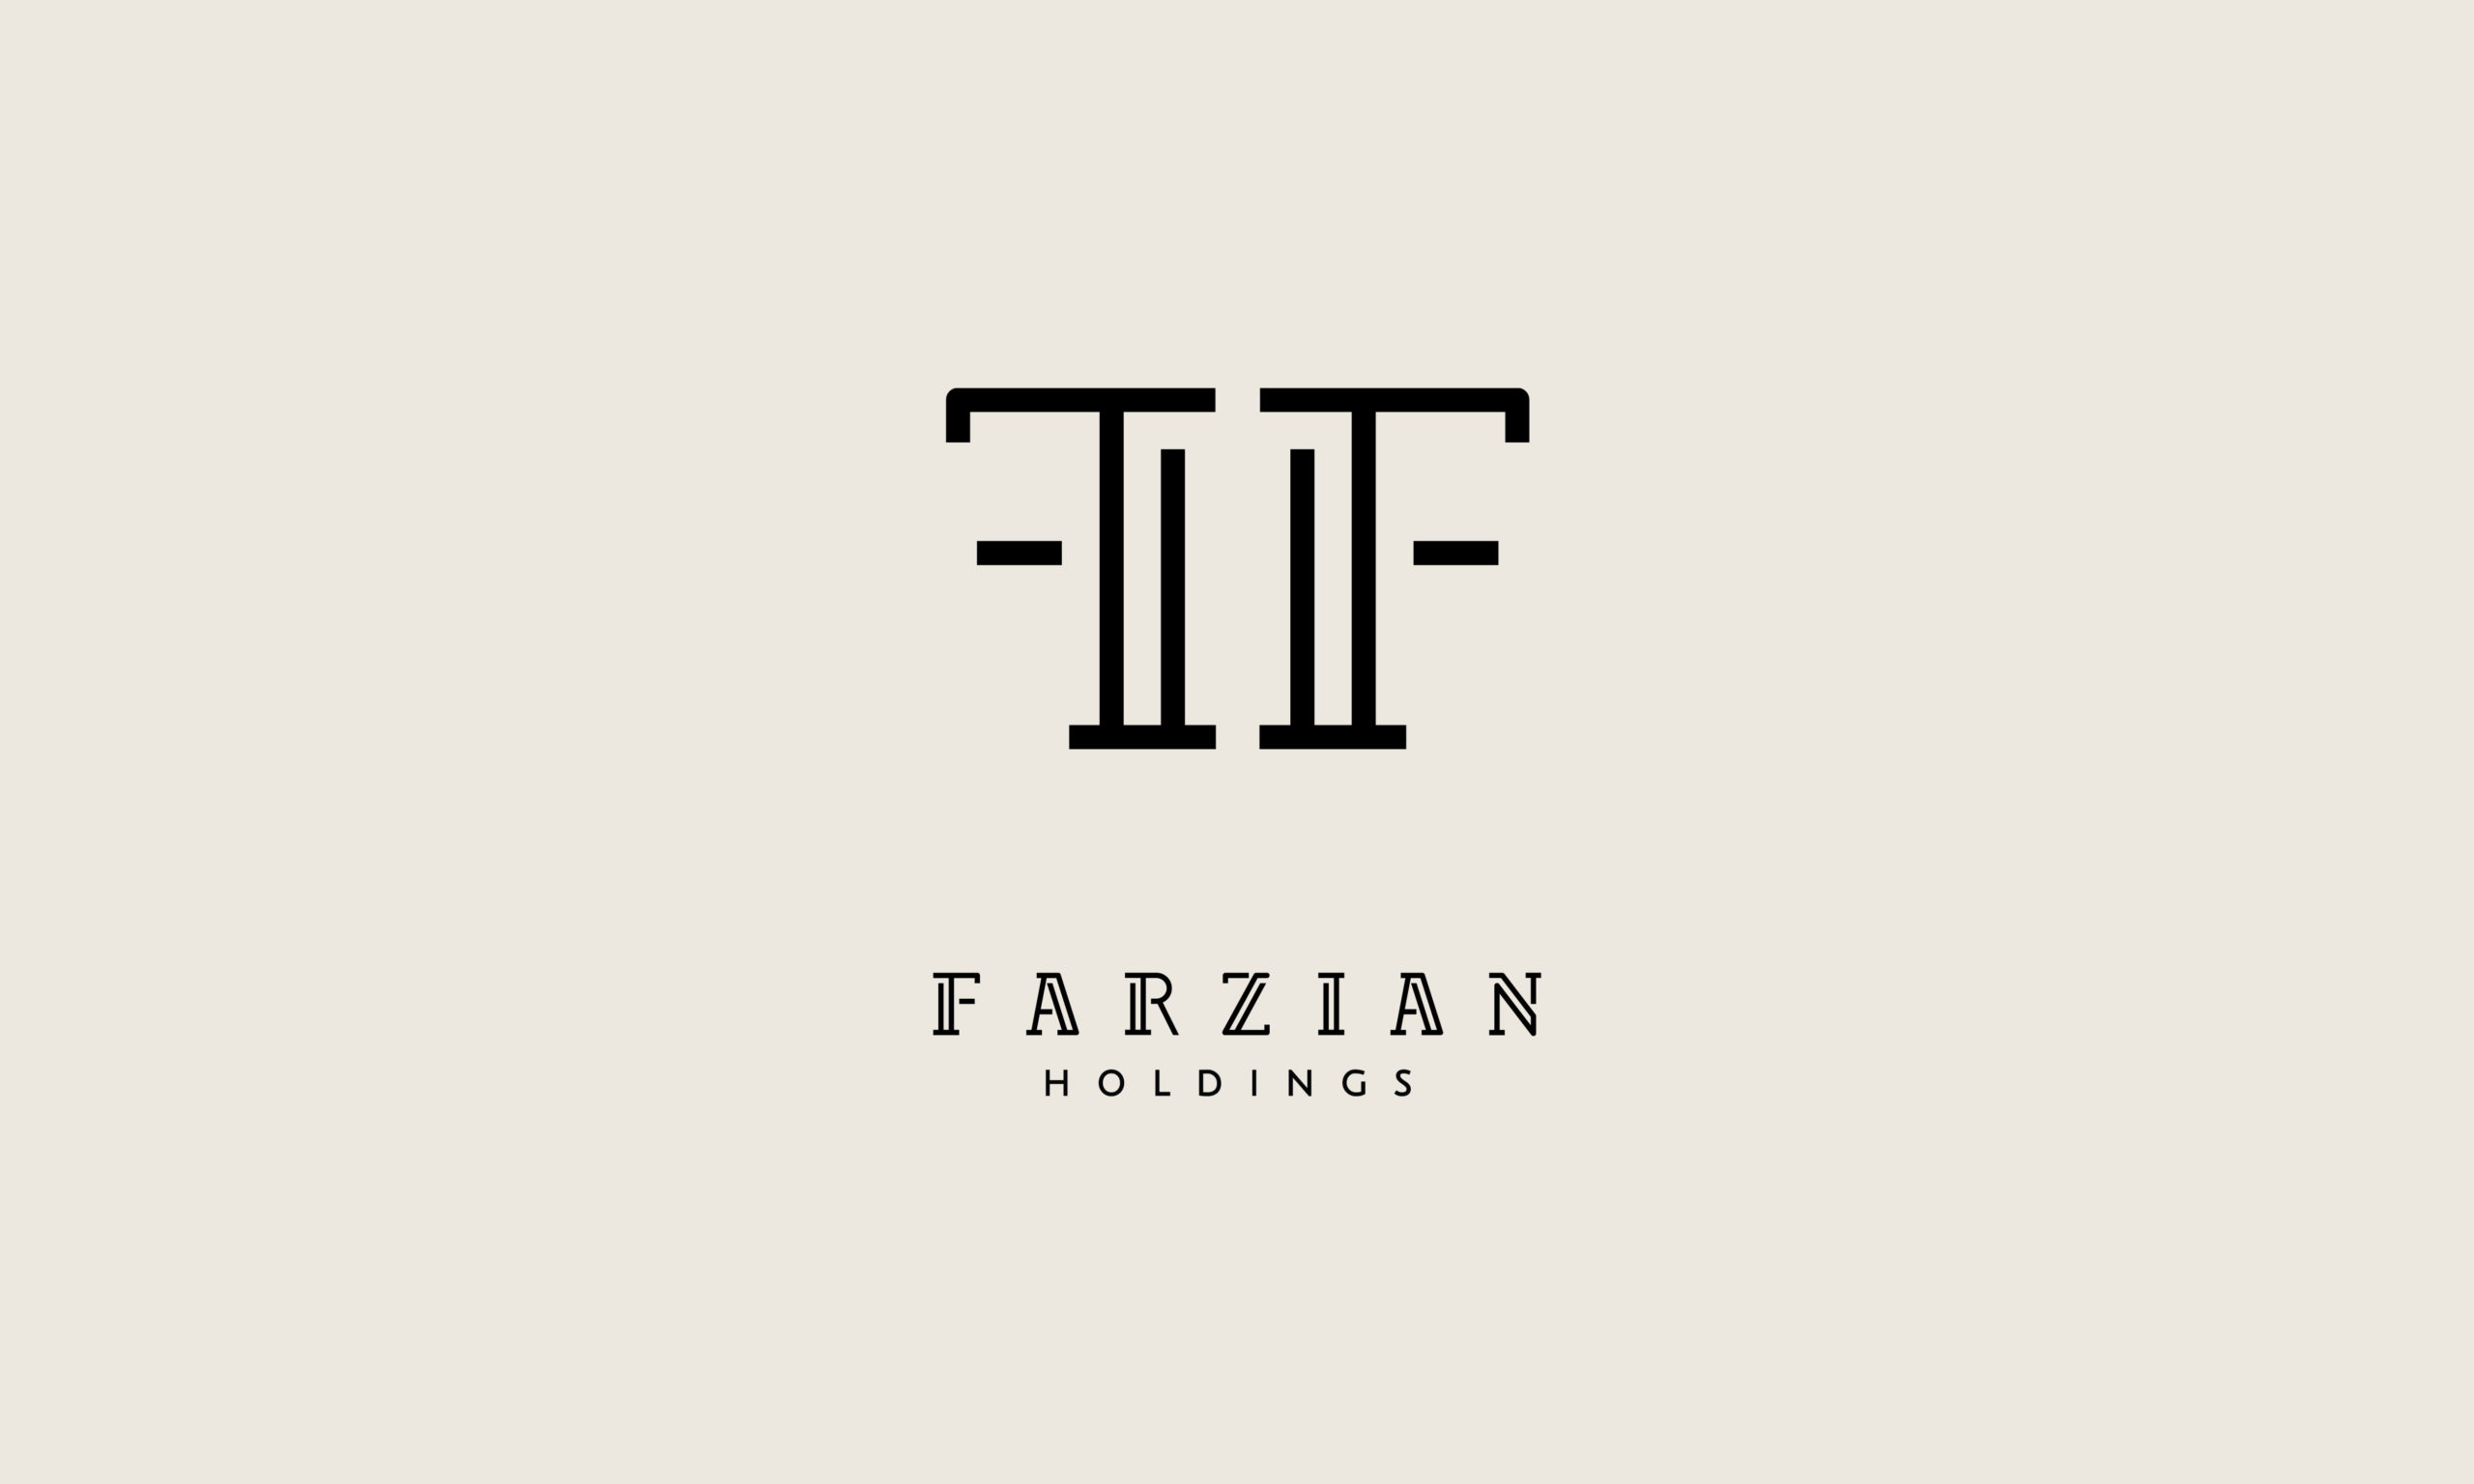 NYX Awards 2020 Winner - Logo design for Farzian Holdings